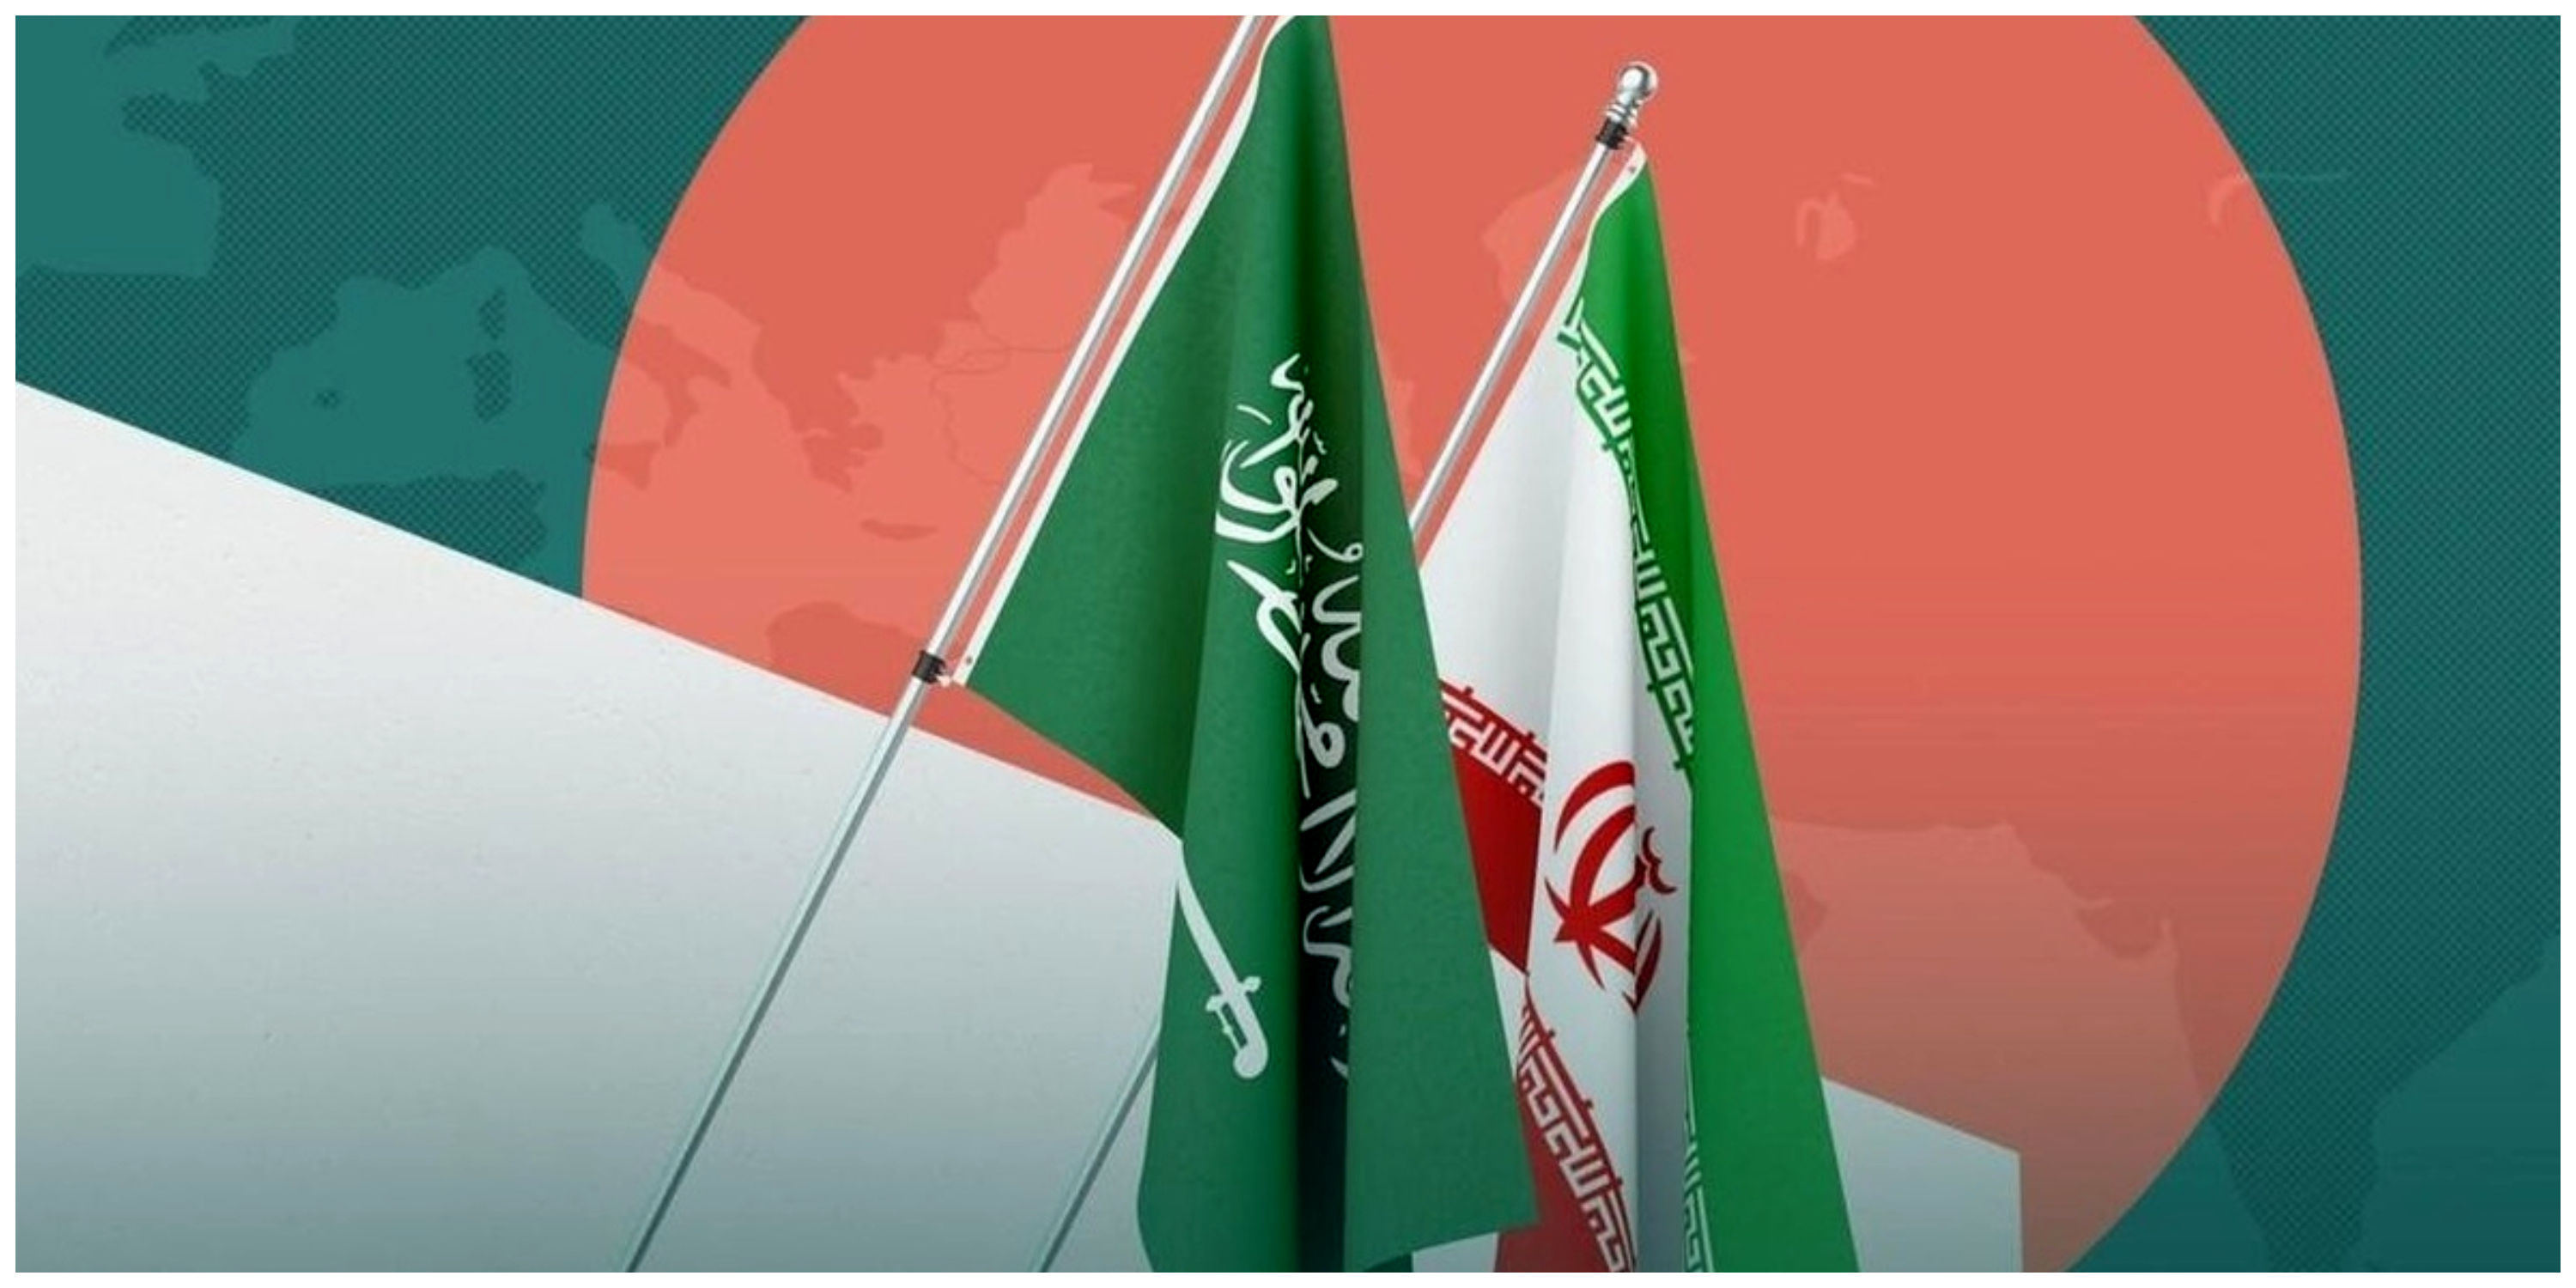 رایزنی تلفنی وزرای خارجه ایران و عربستان